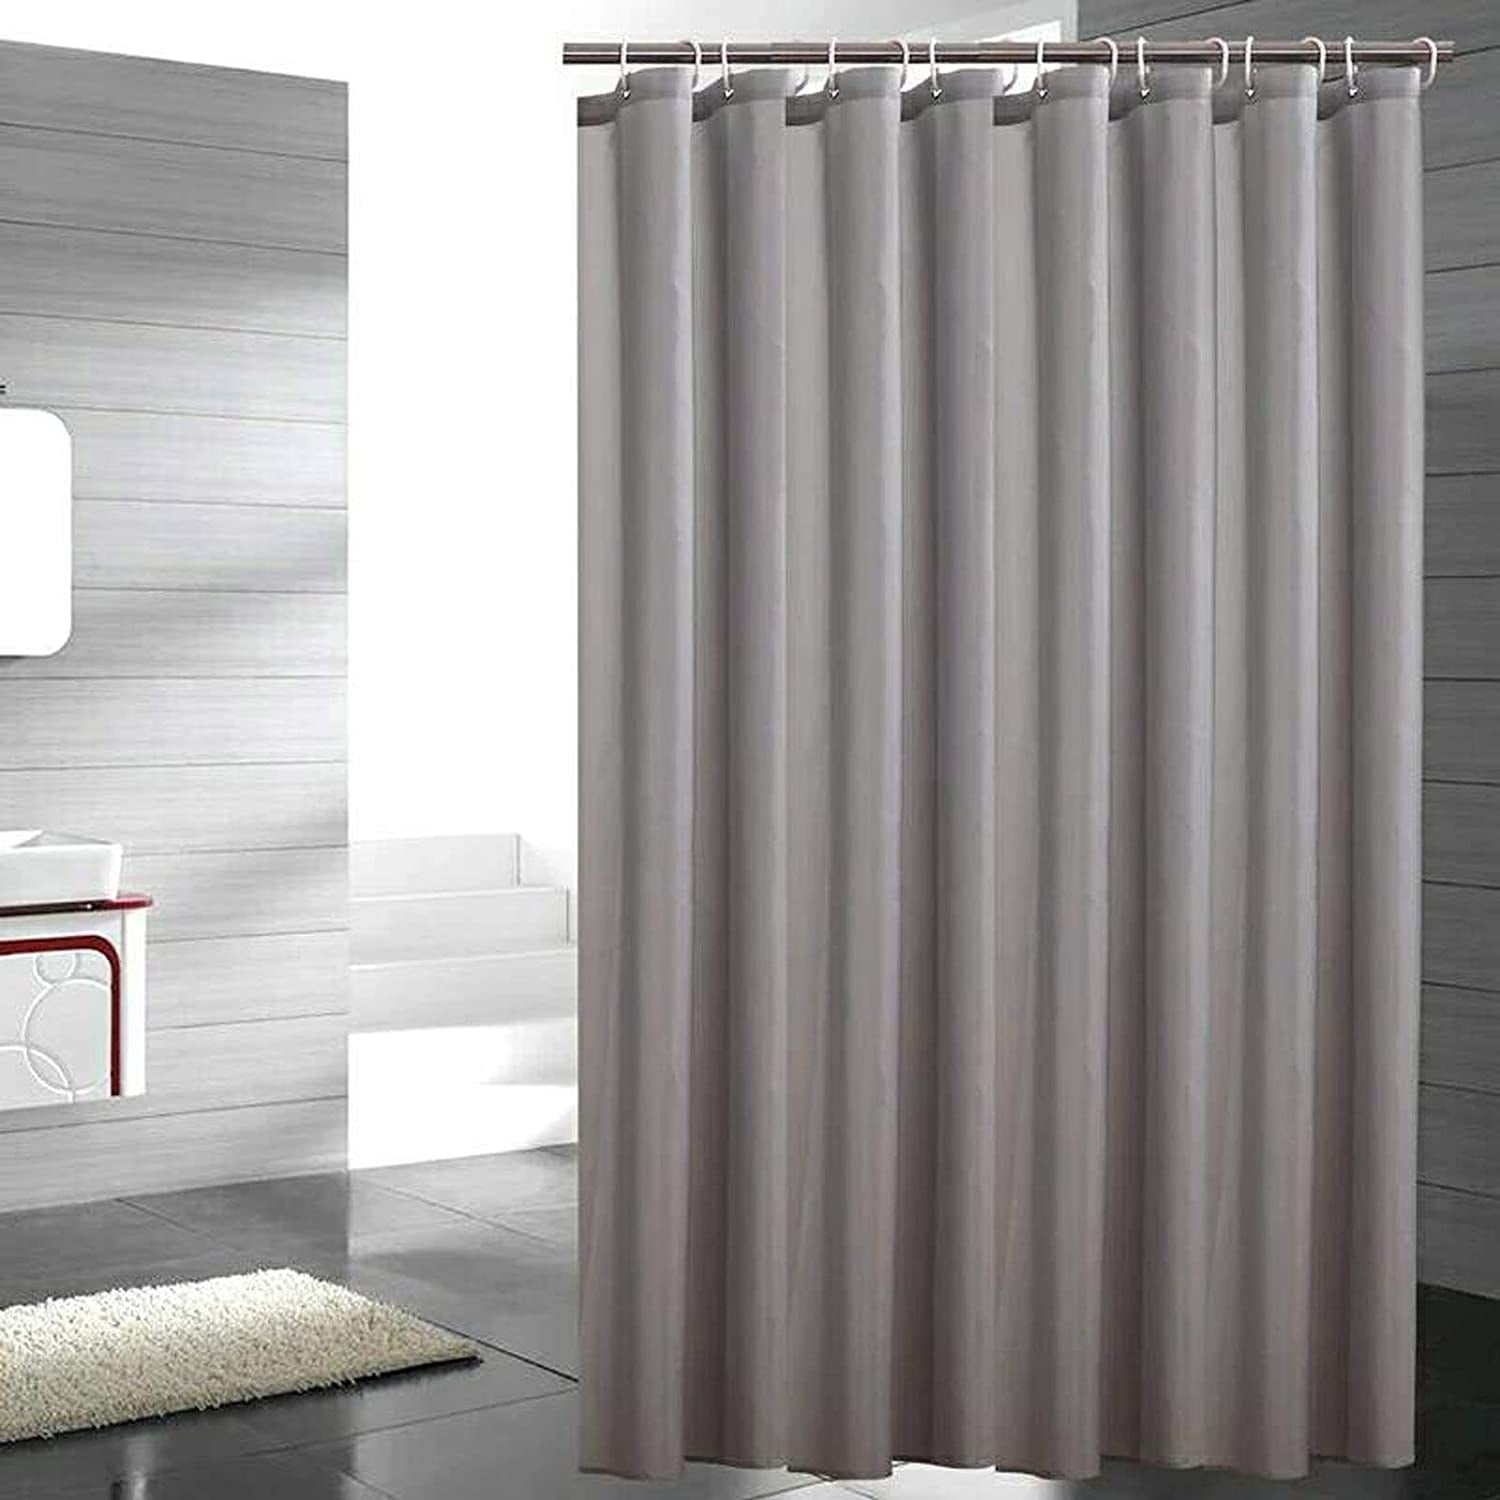 Wedding Set Waterproof Bathroom Polyester Shower Curtain Liner Water Resistant 